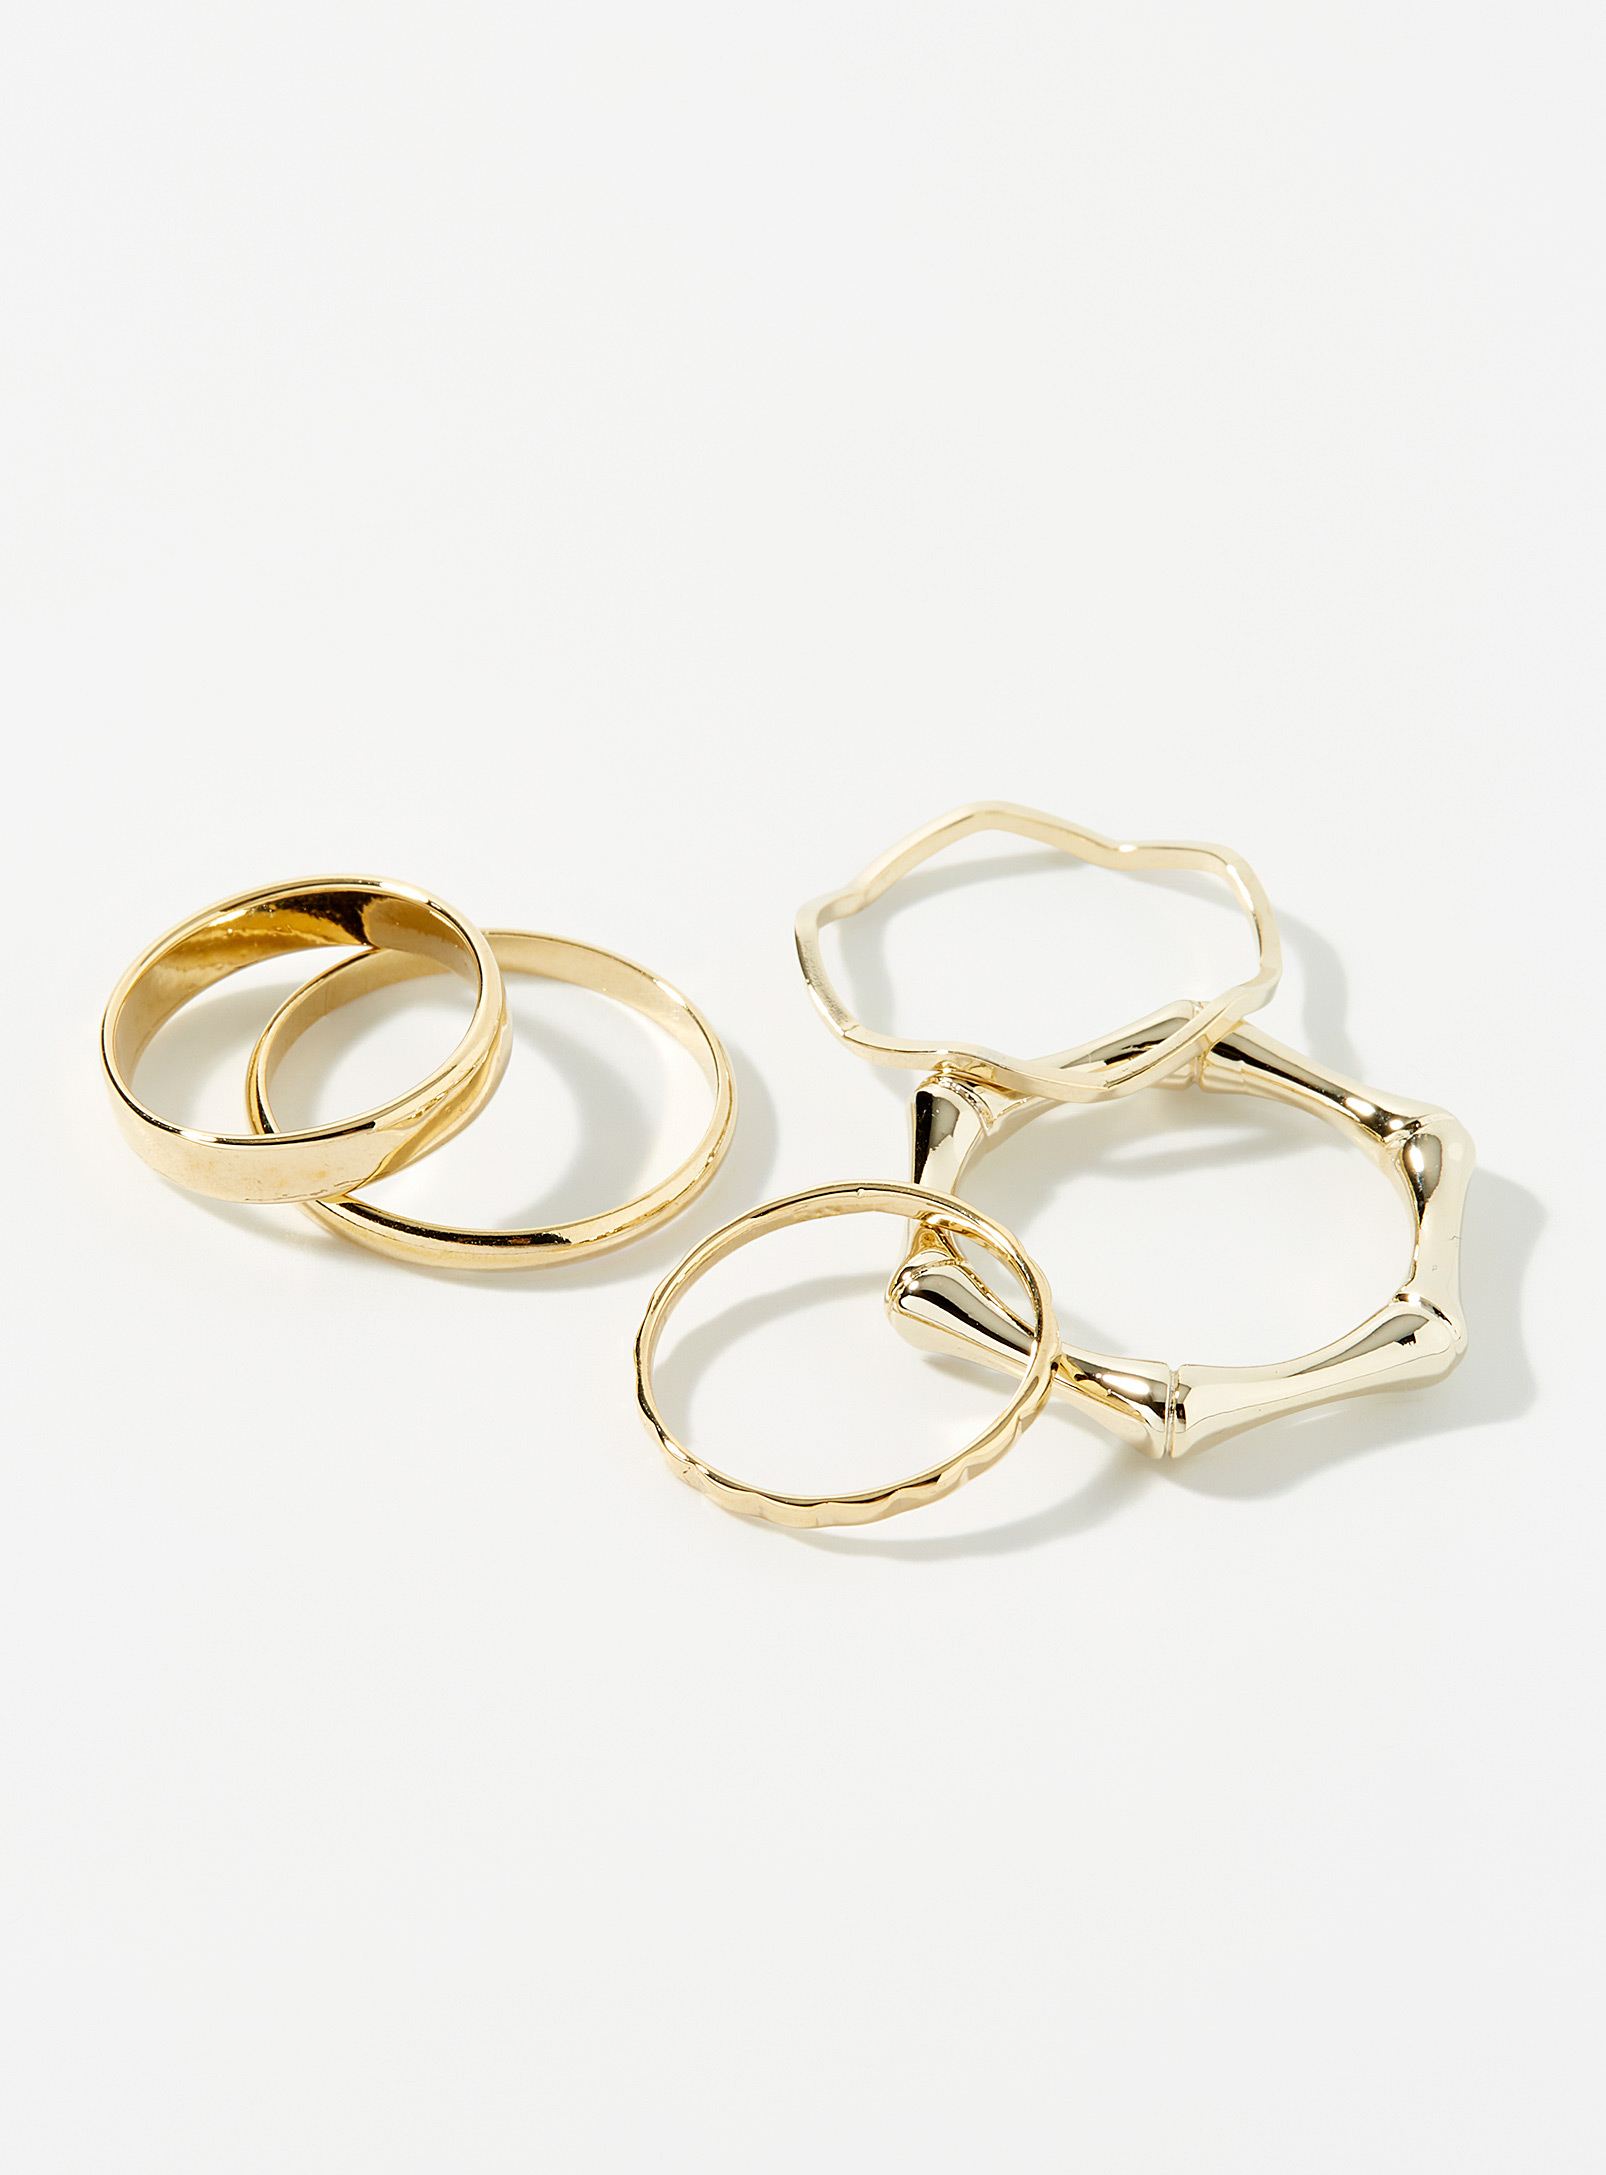 Simons - Women's Thin golden rings Set of 5